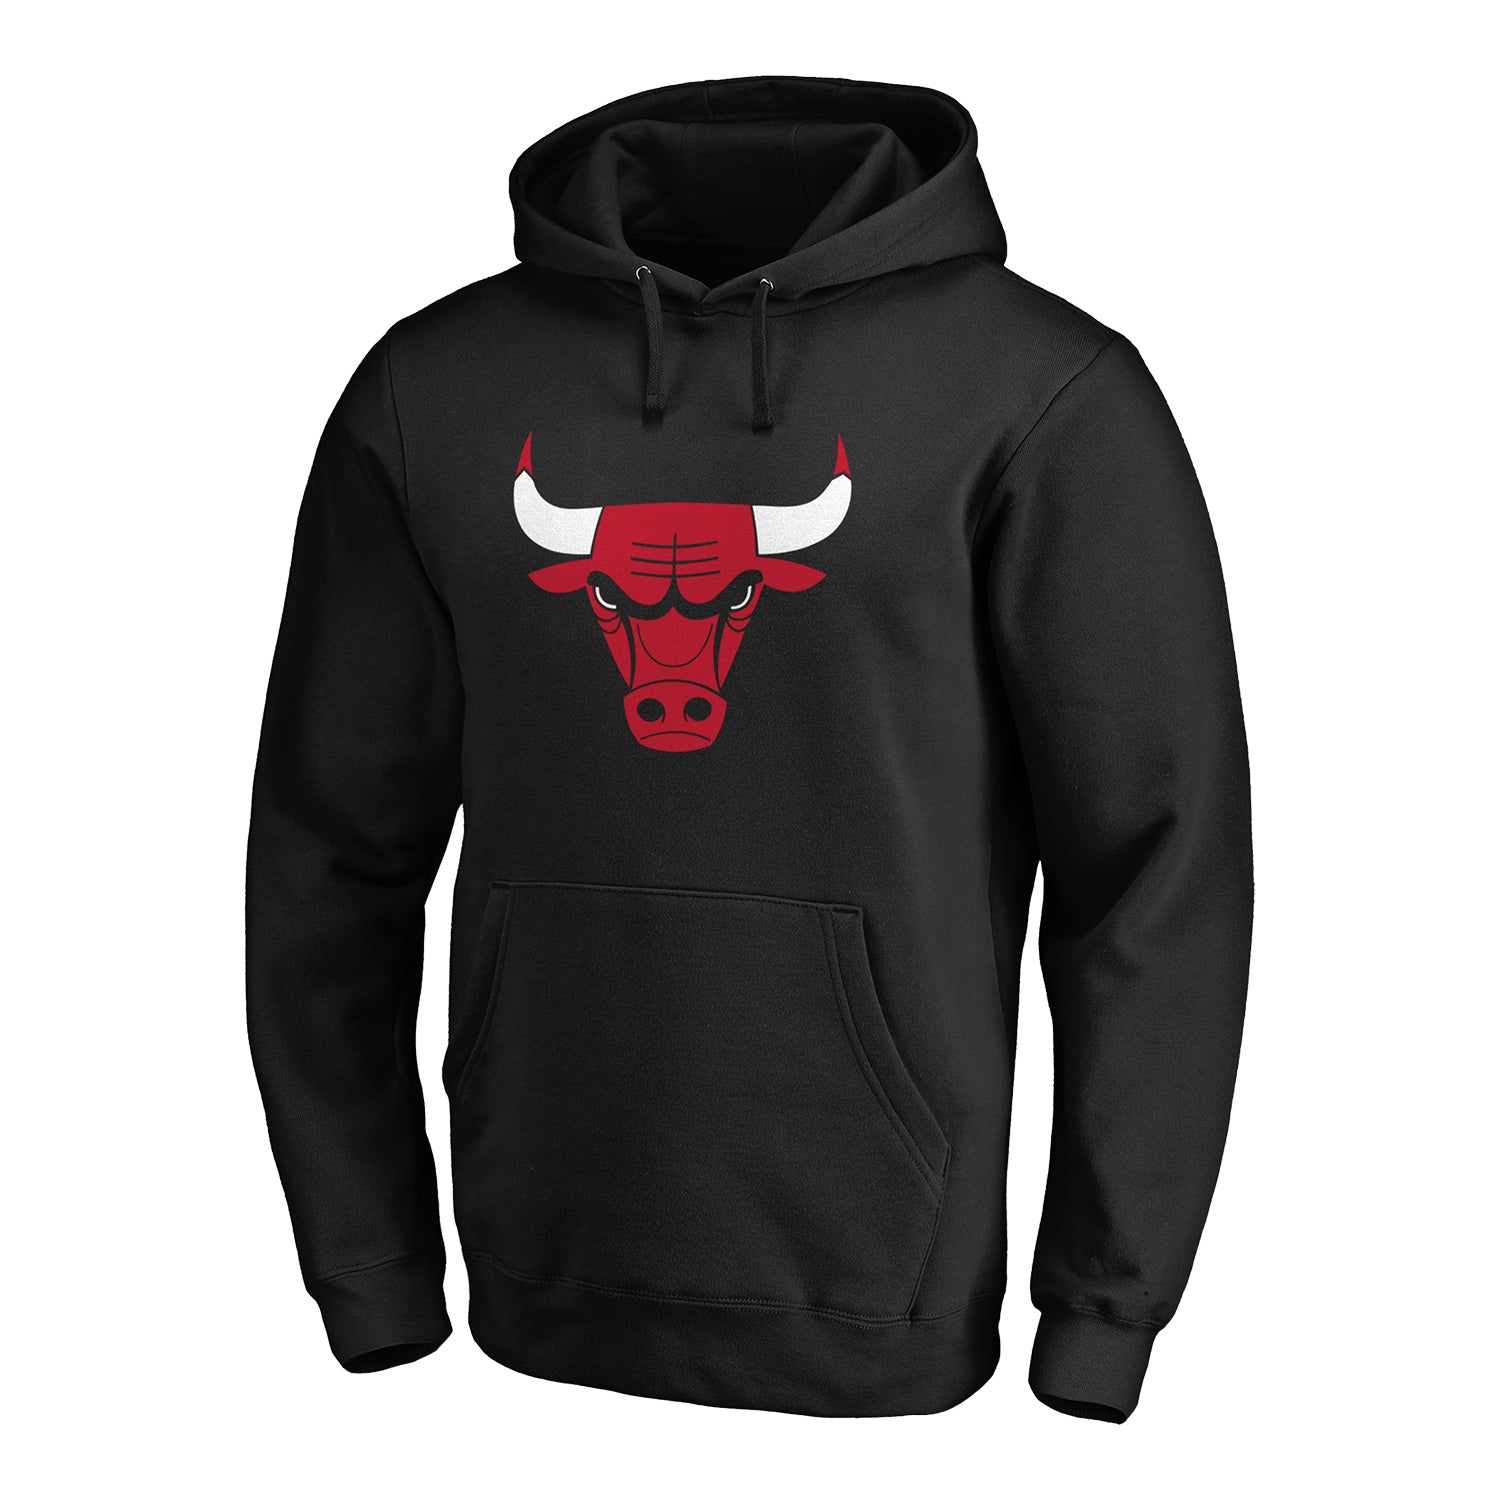 chicago bulls hooded sweatshirt